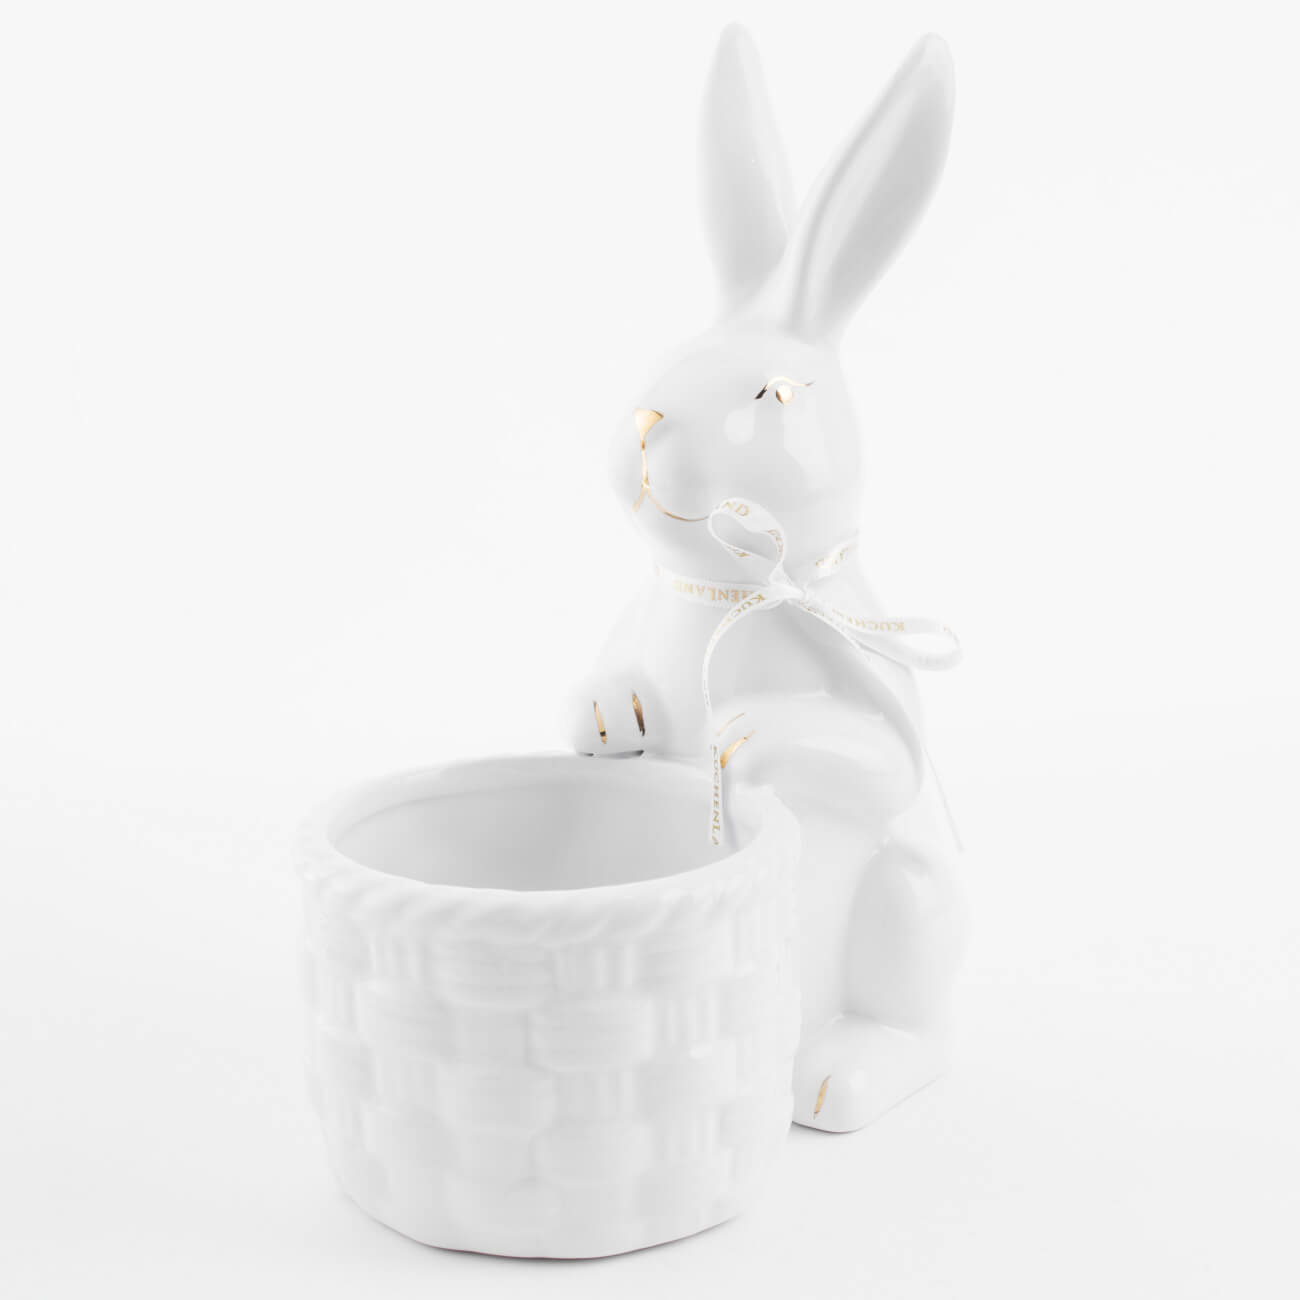 сувенир керамика романтичная девушка с корзиной ов 35х16х11 см Конфетница, 18x23 см, керамика, бело-золотистая, Кролик с плетенной корзиной, Easter gold